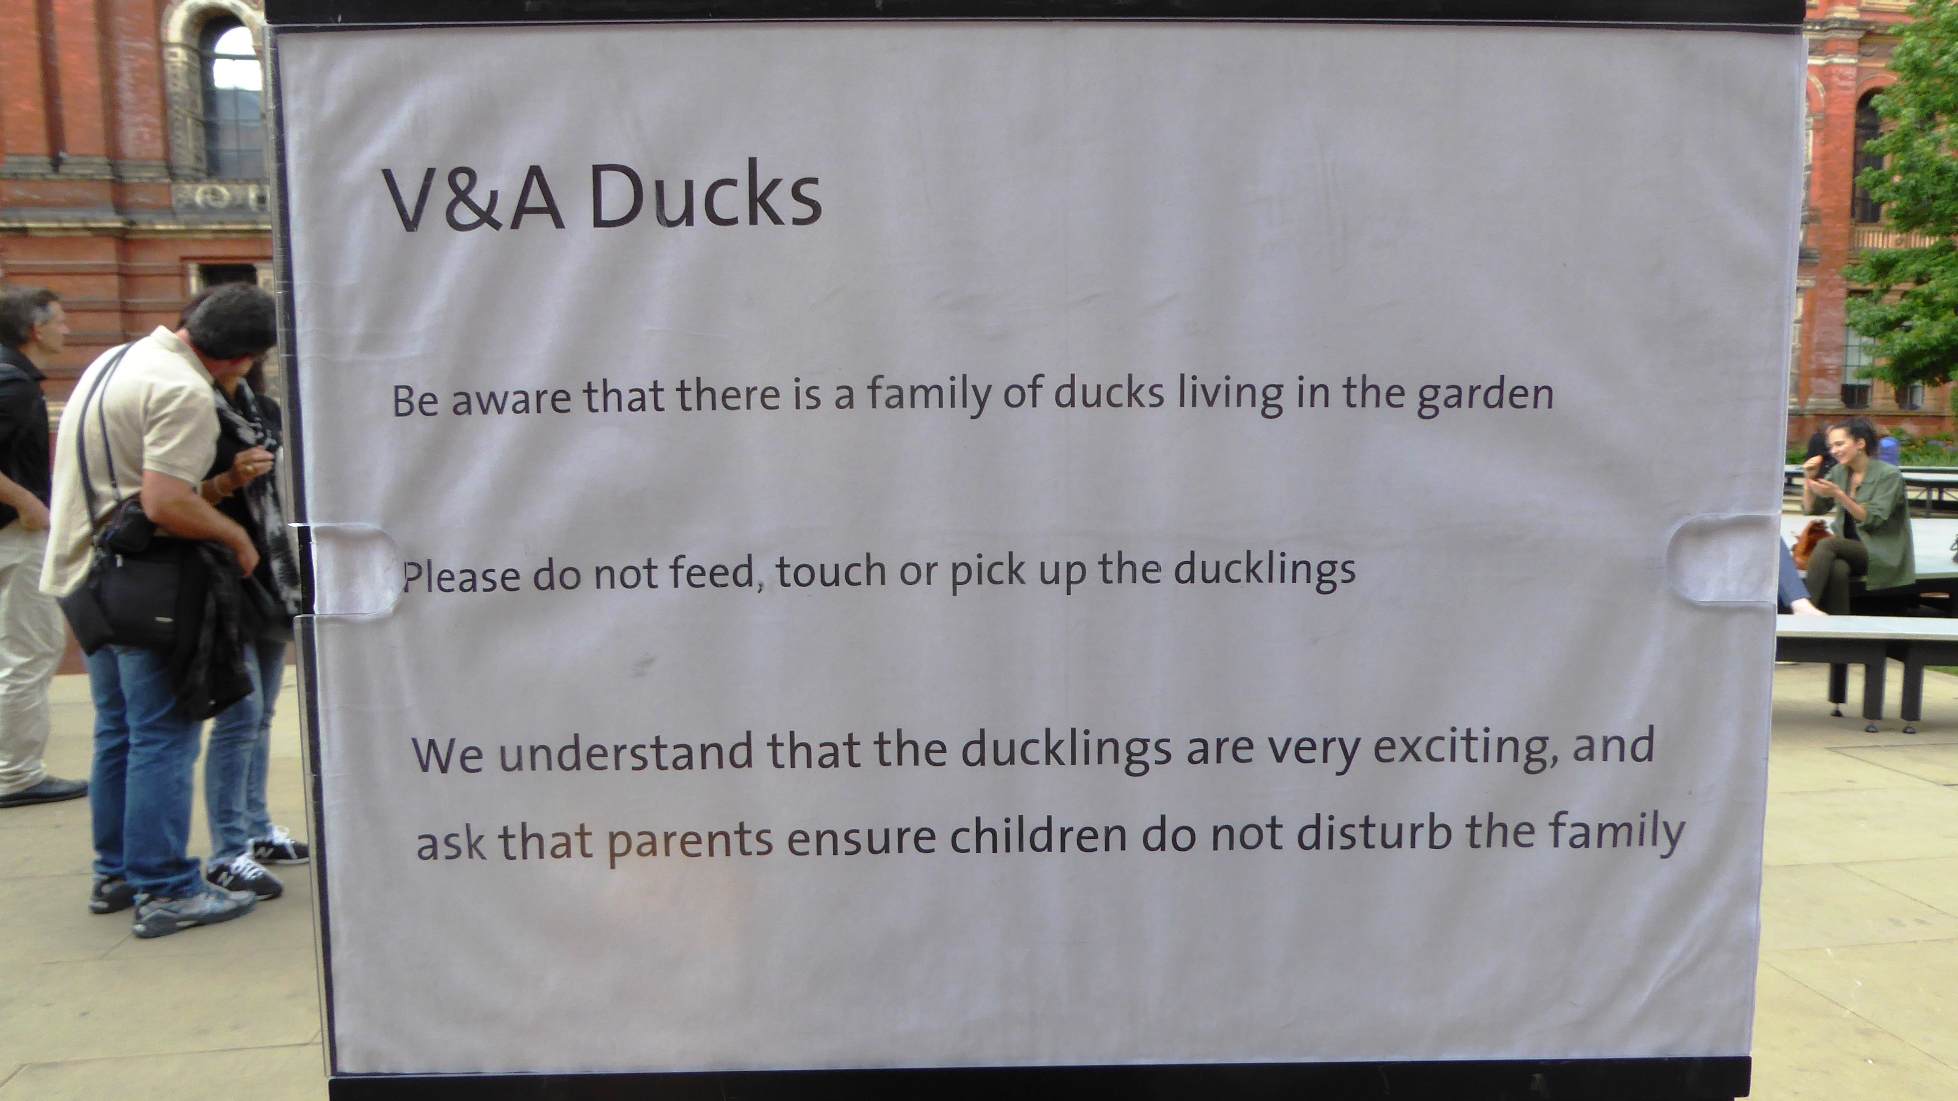 A sign in the garden advising on appropriate behavioru around the ducks © Rosie Wanek